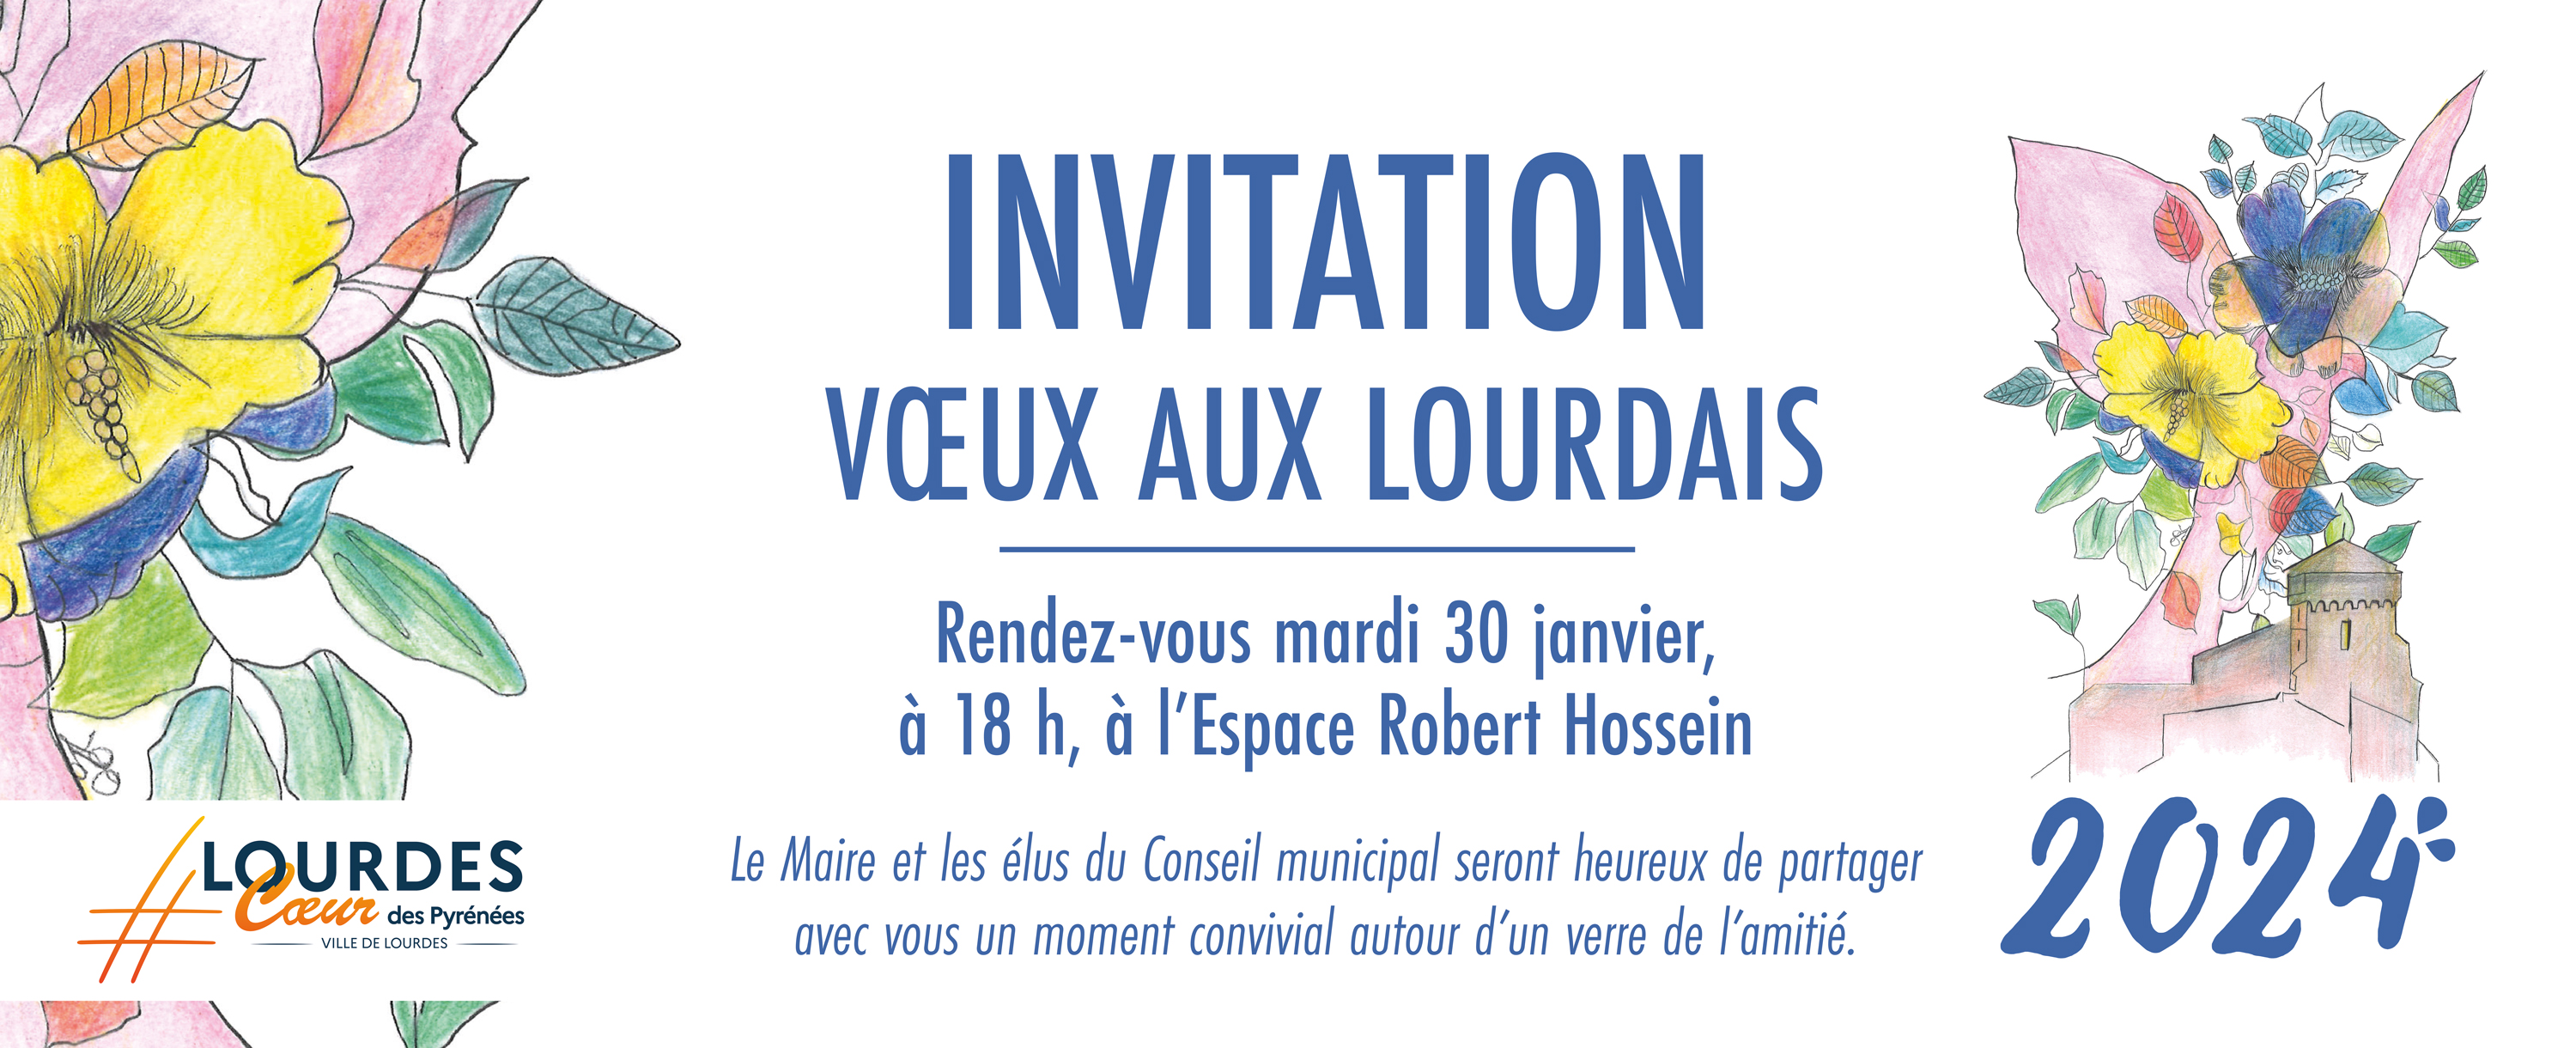 Invitation voeux aux lourdais 2024